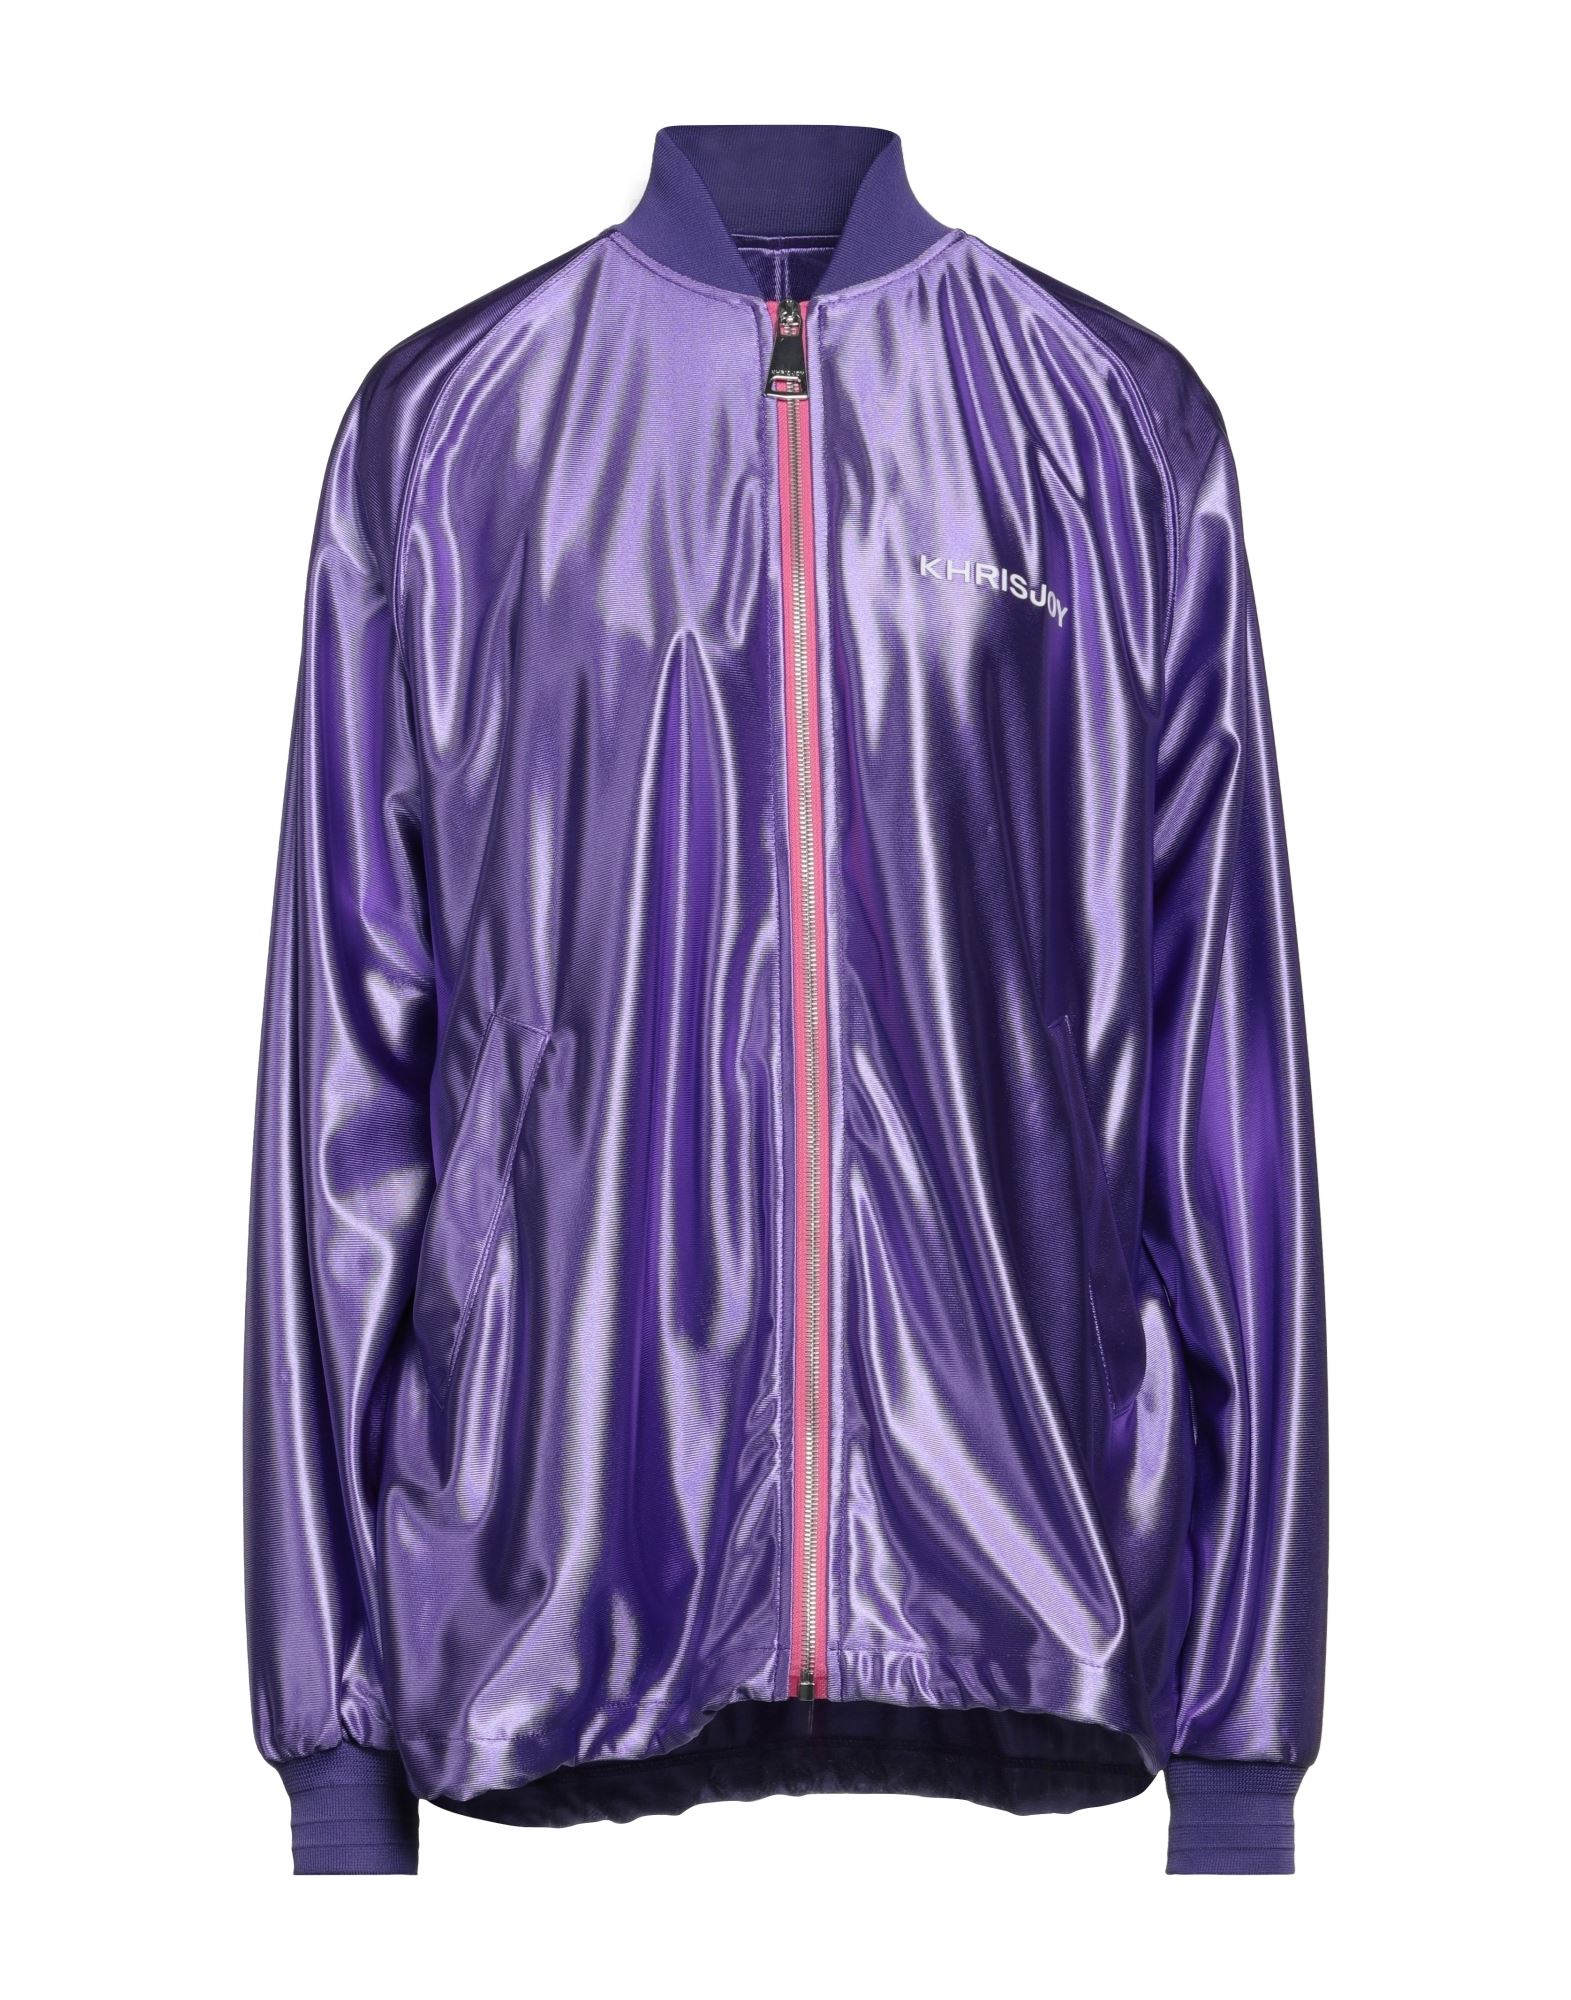 Khrisjoy Jackets In Purple